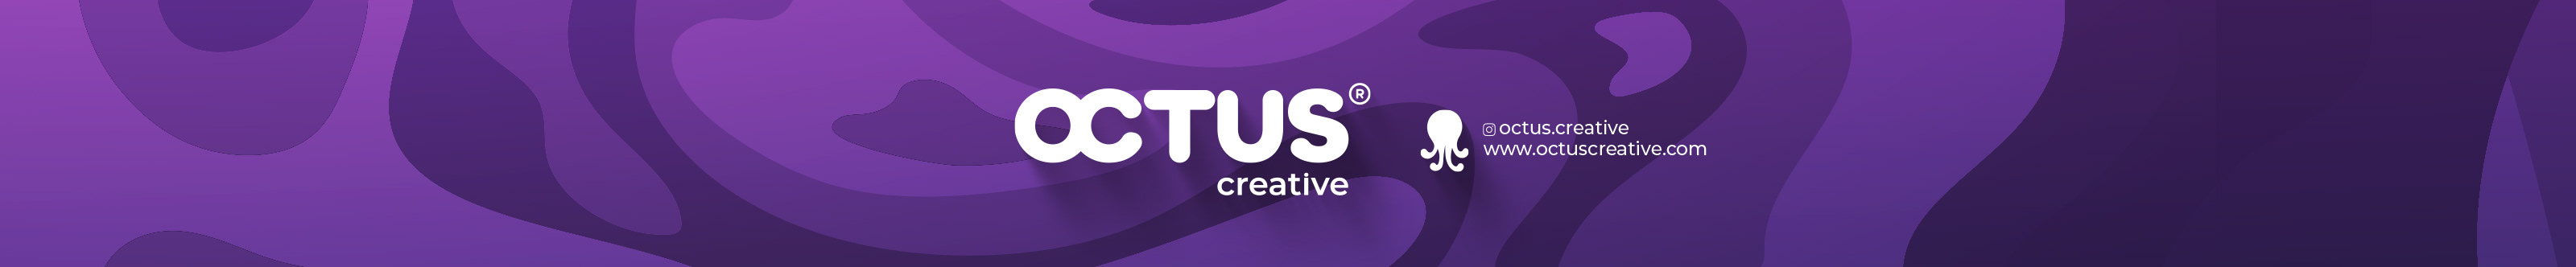 Octus Creative's profile banner